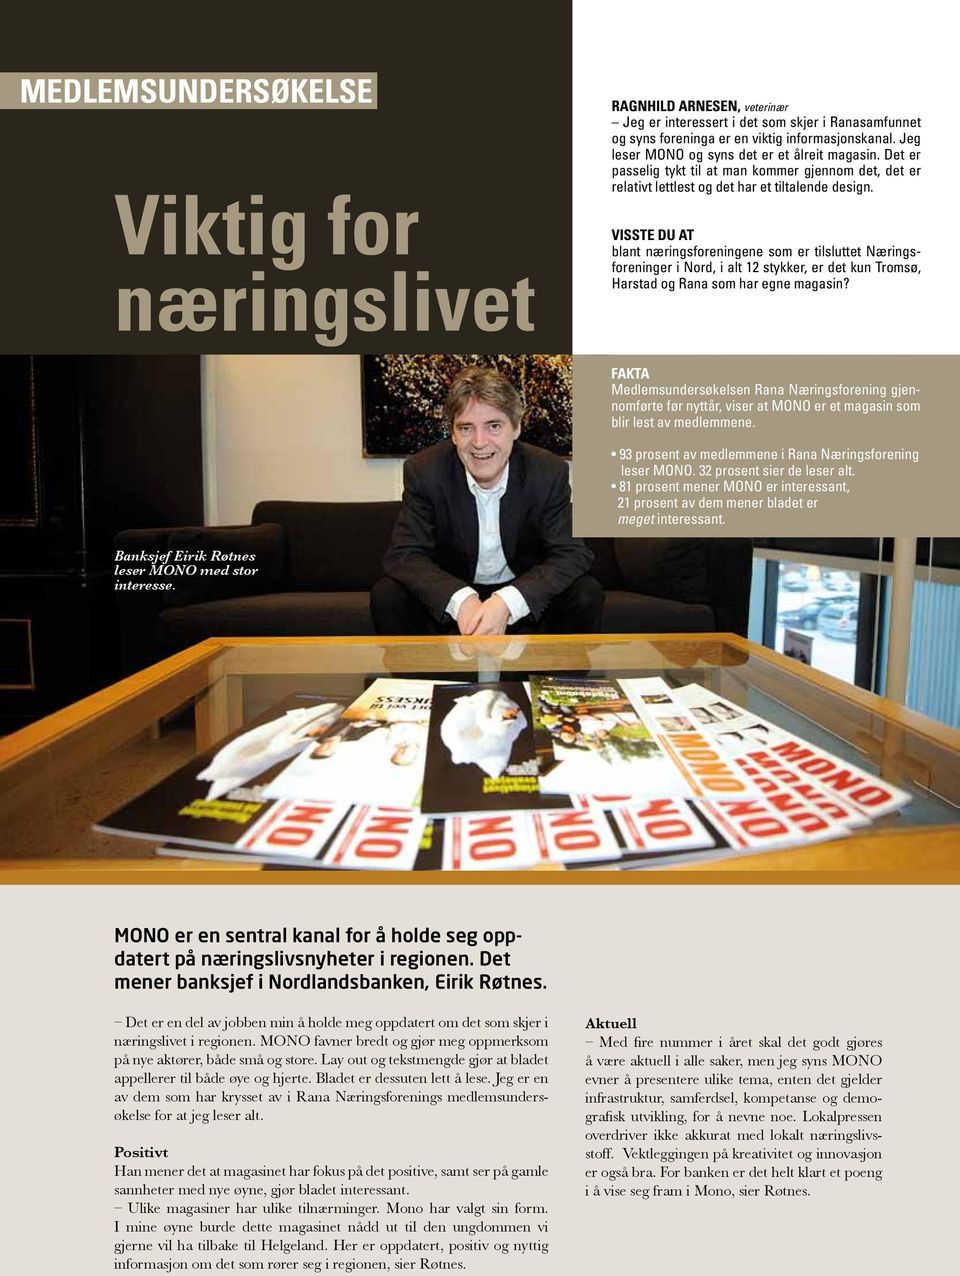 VISSTE DU AT blant næringsforeningene som er tilsluttet Næringsforeninger i Nord, i alt 12 stykker, er det kun Tromsø, Harstad og Rana som har egne magasin?